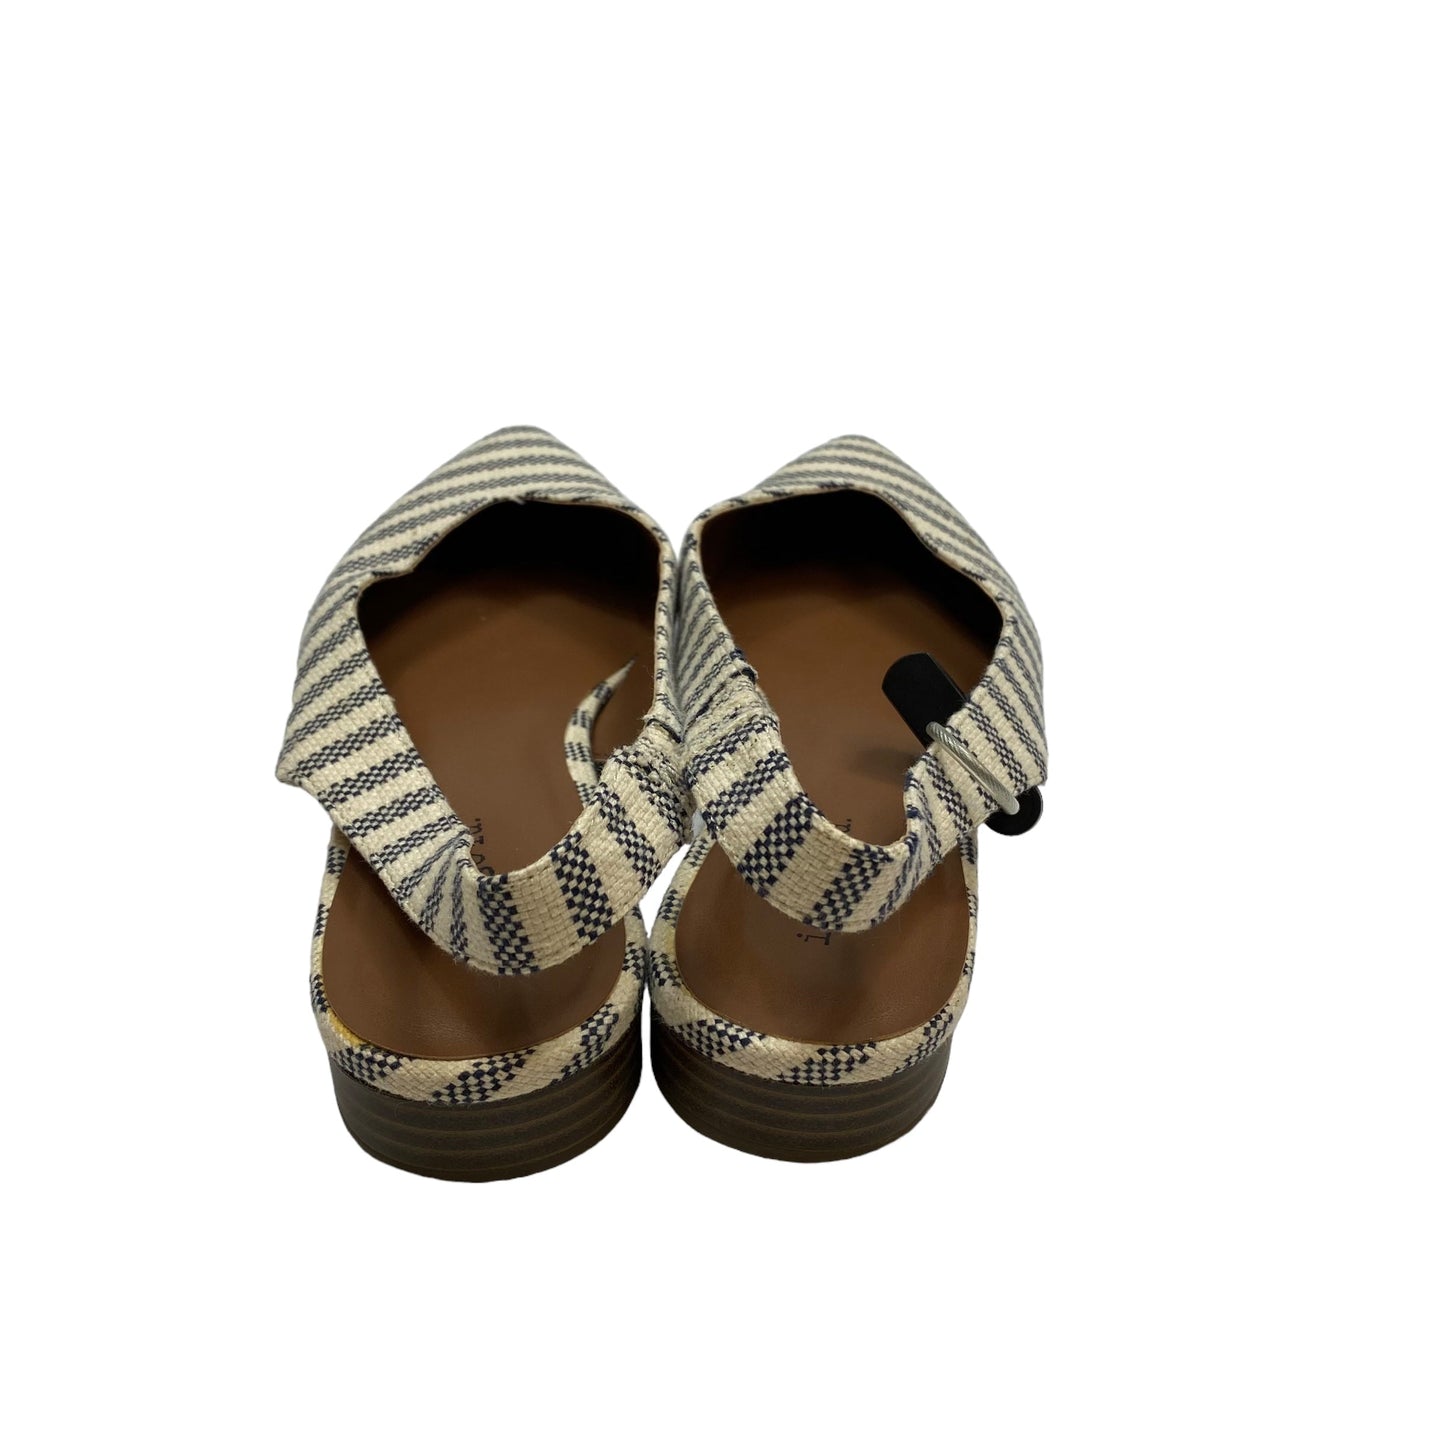 Cream Shoes Flats Indigo Rd, Size 8.5